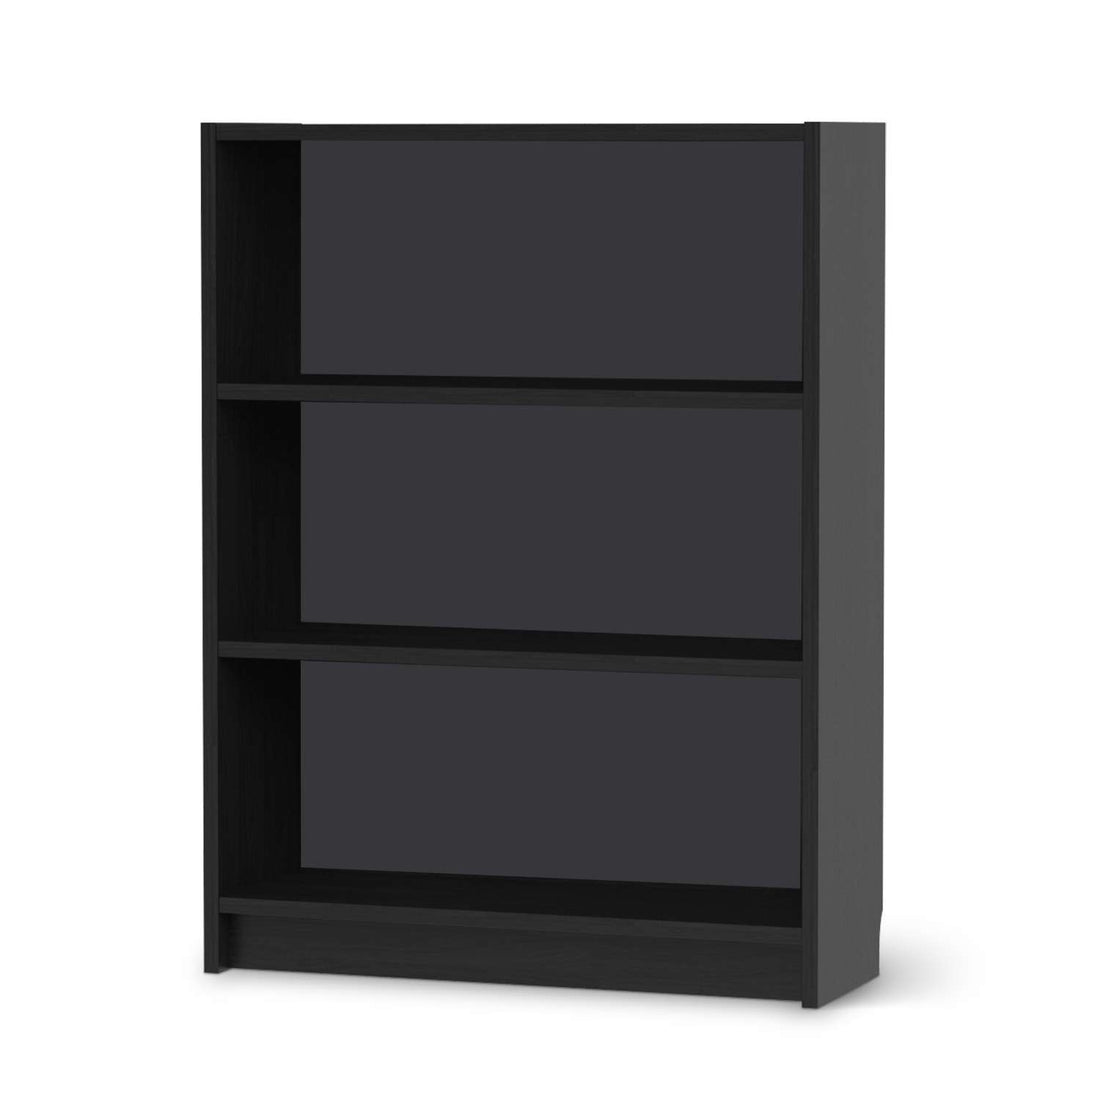 Möbelfolie Grau Dark - IKEA Billy Regal 3 Fächer - schwarz